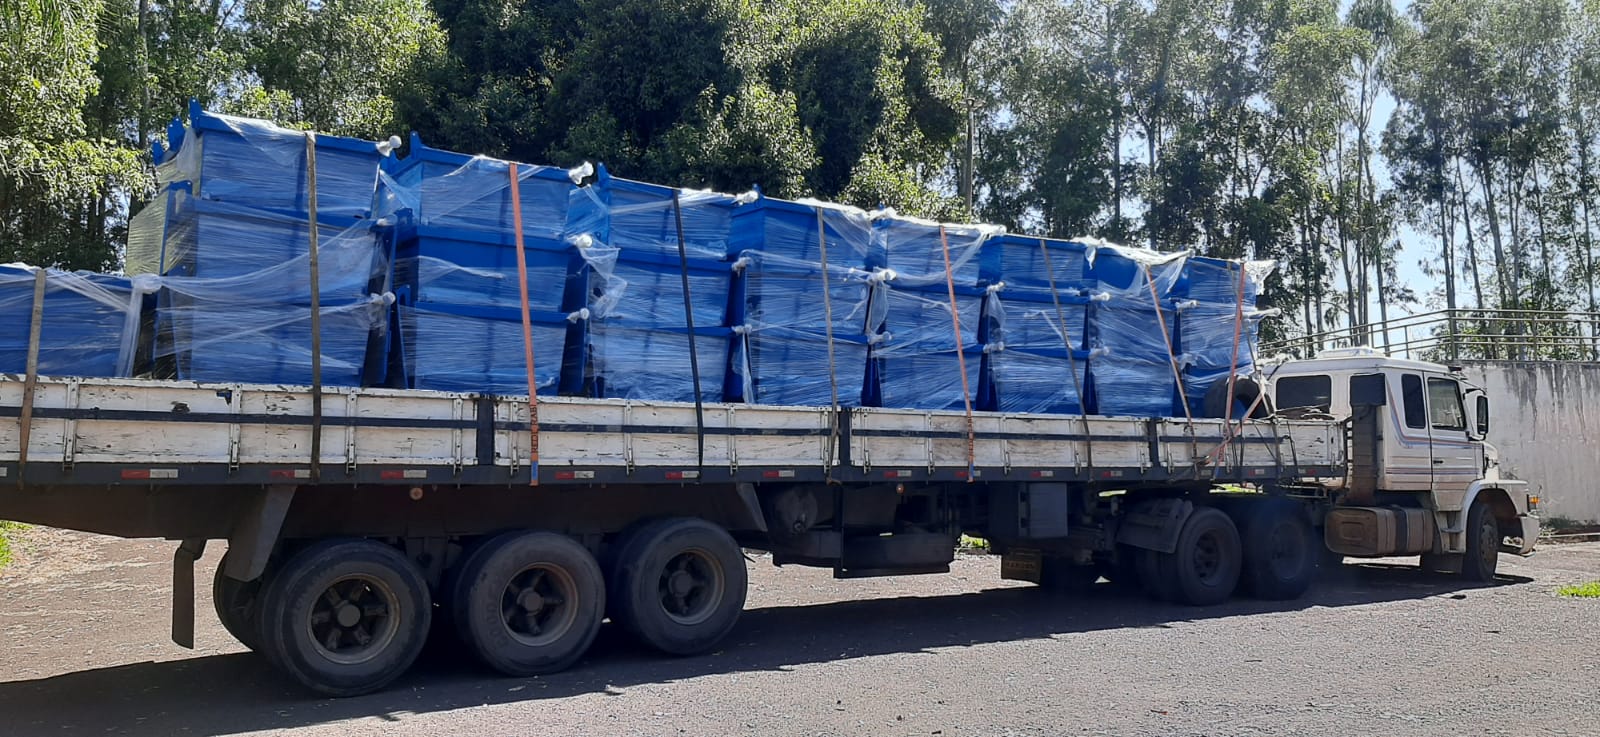 SAAE Barretos Implementa 25 containers para resíduos em pontos estratégicos do município